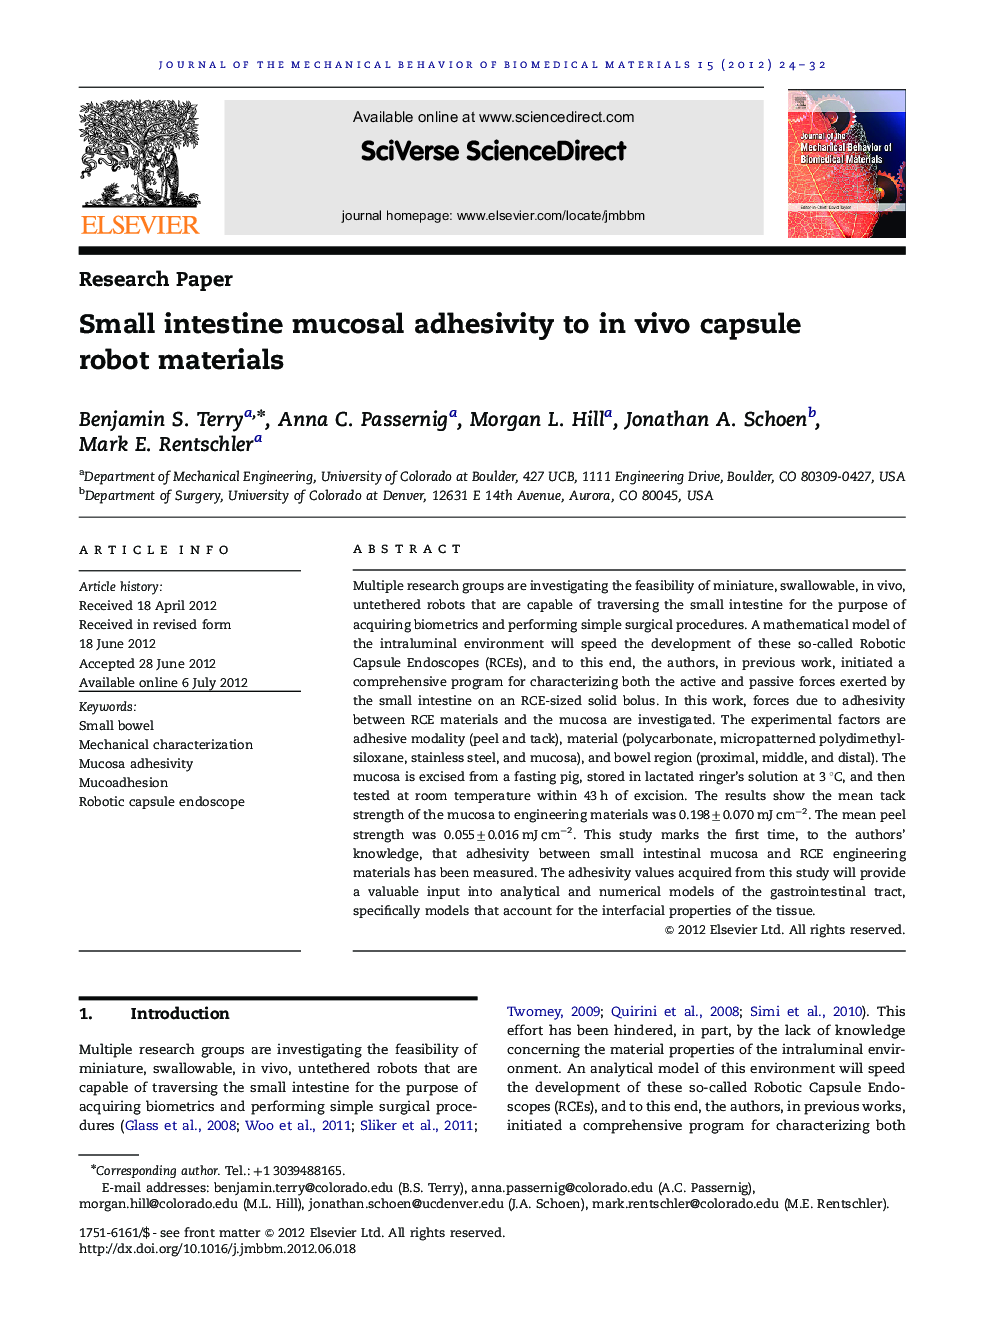 Small intestine mucosal adhesivity to in vivo capsule robot materials